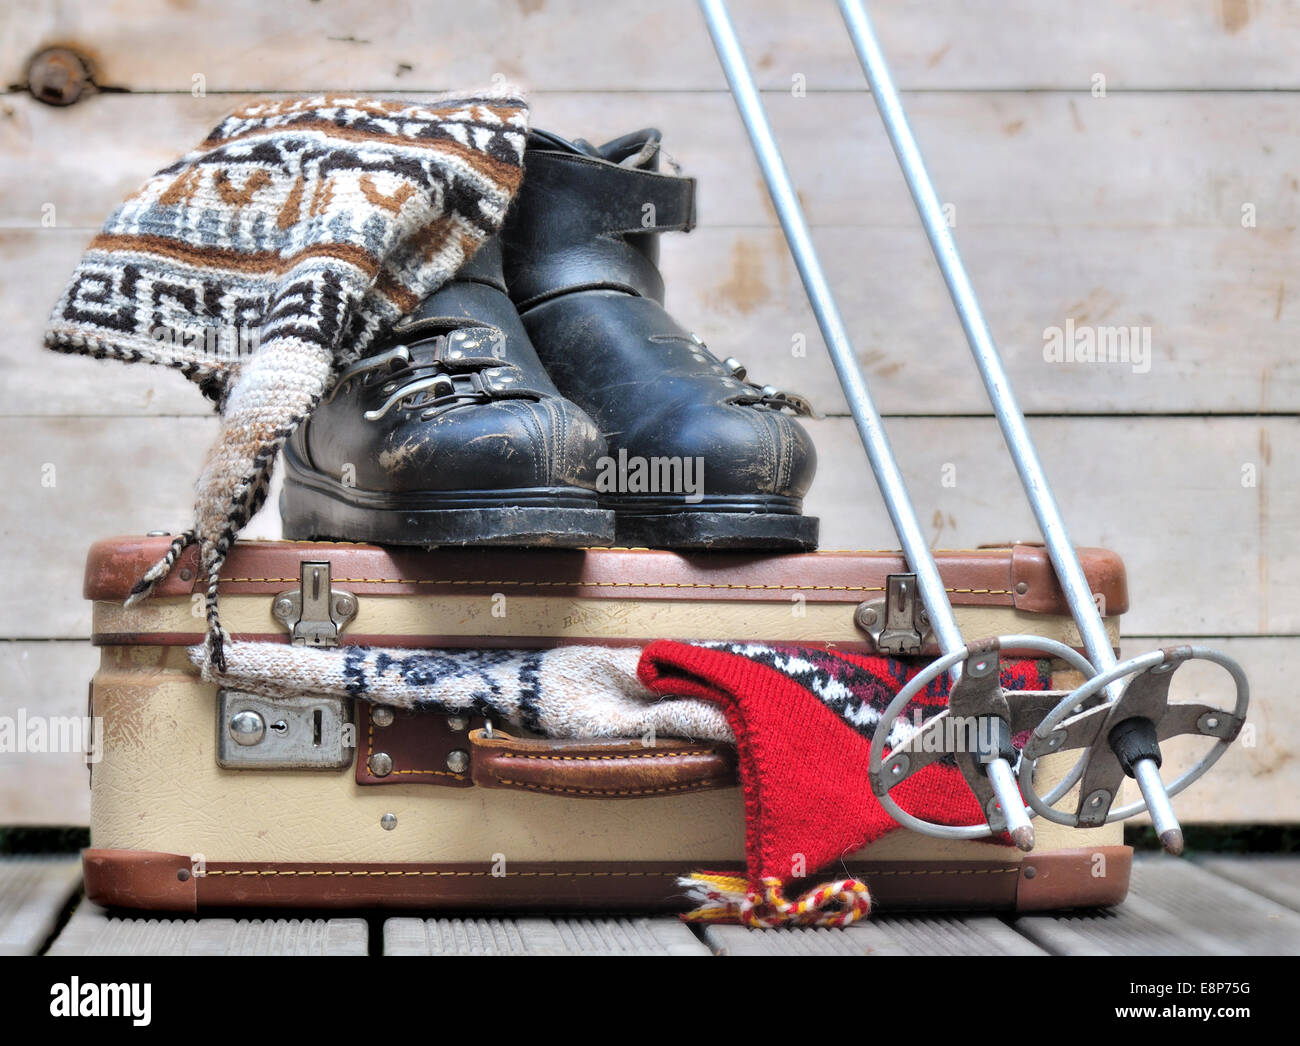 Viejas botas de esquí en una pequeña maleta llena de ropa de abrigo Foto de stock